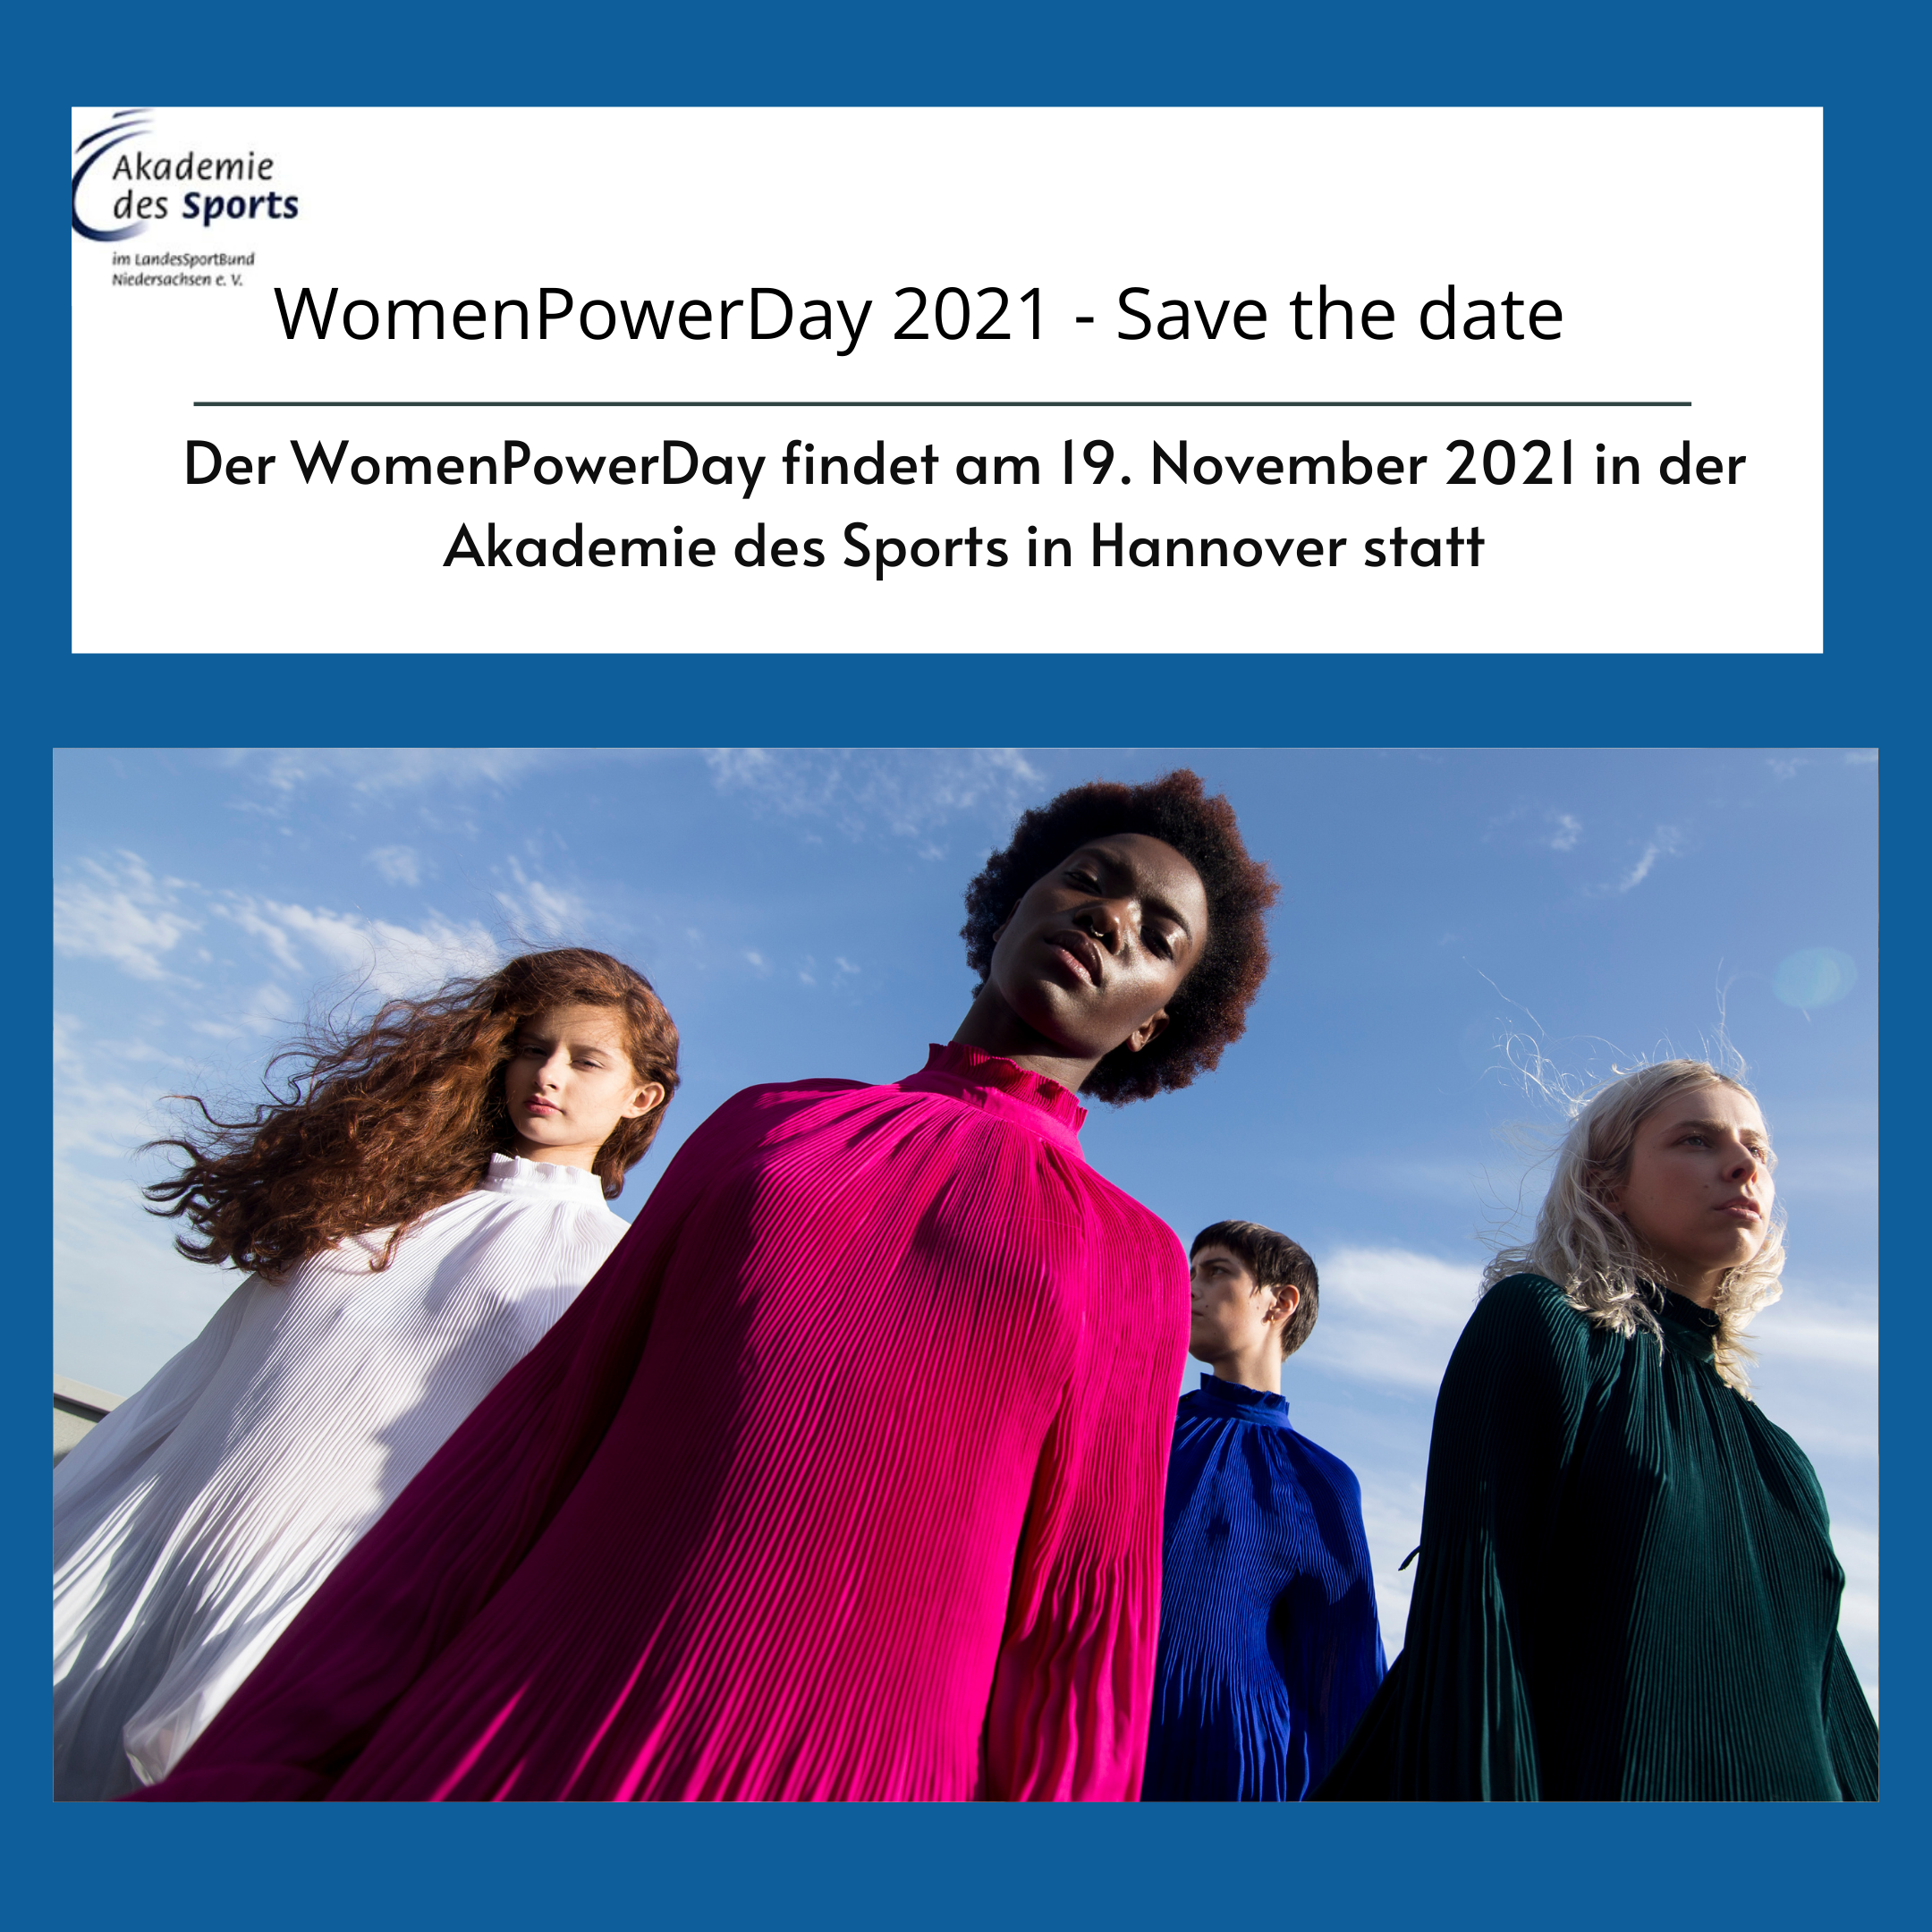 WomenPowerDay 2021 - Save the date